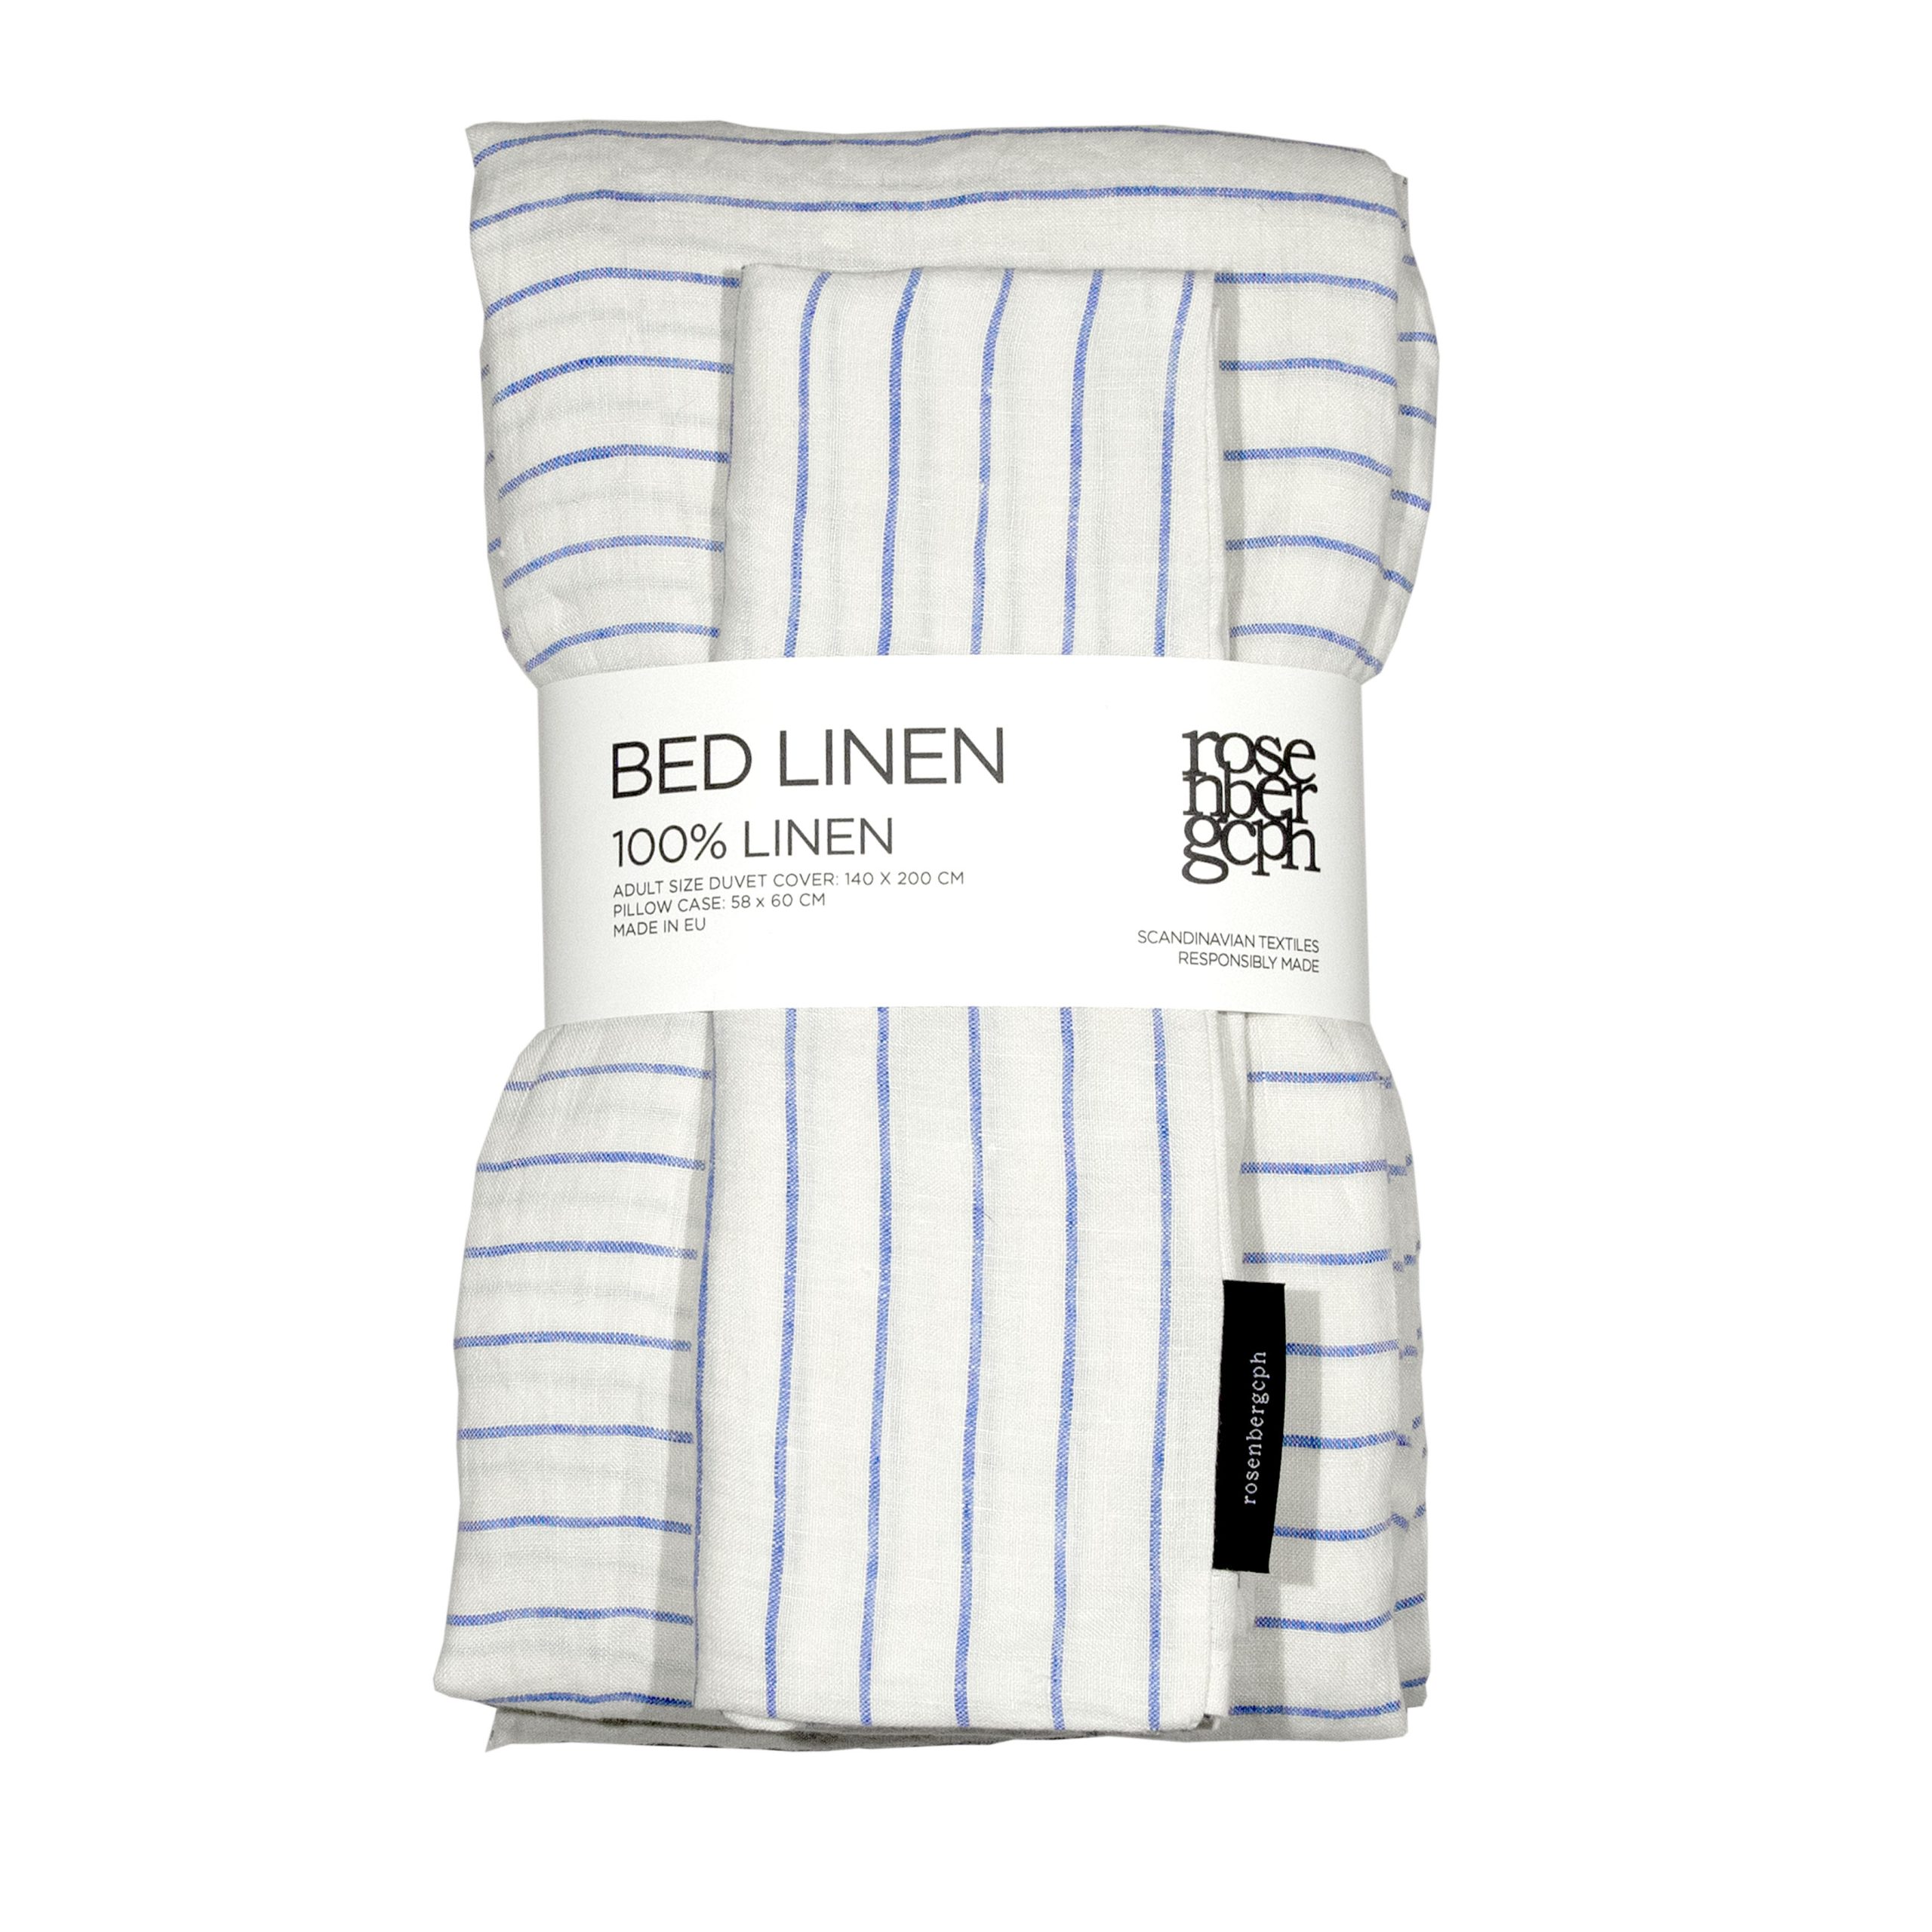 Stripe blue 100% linen bed linen, designed by Anne Rosenberg, RosenbergCph